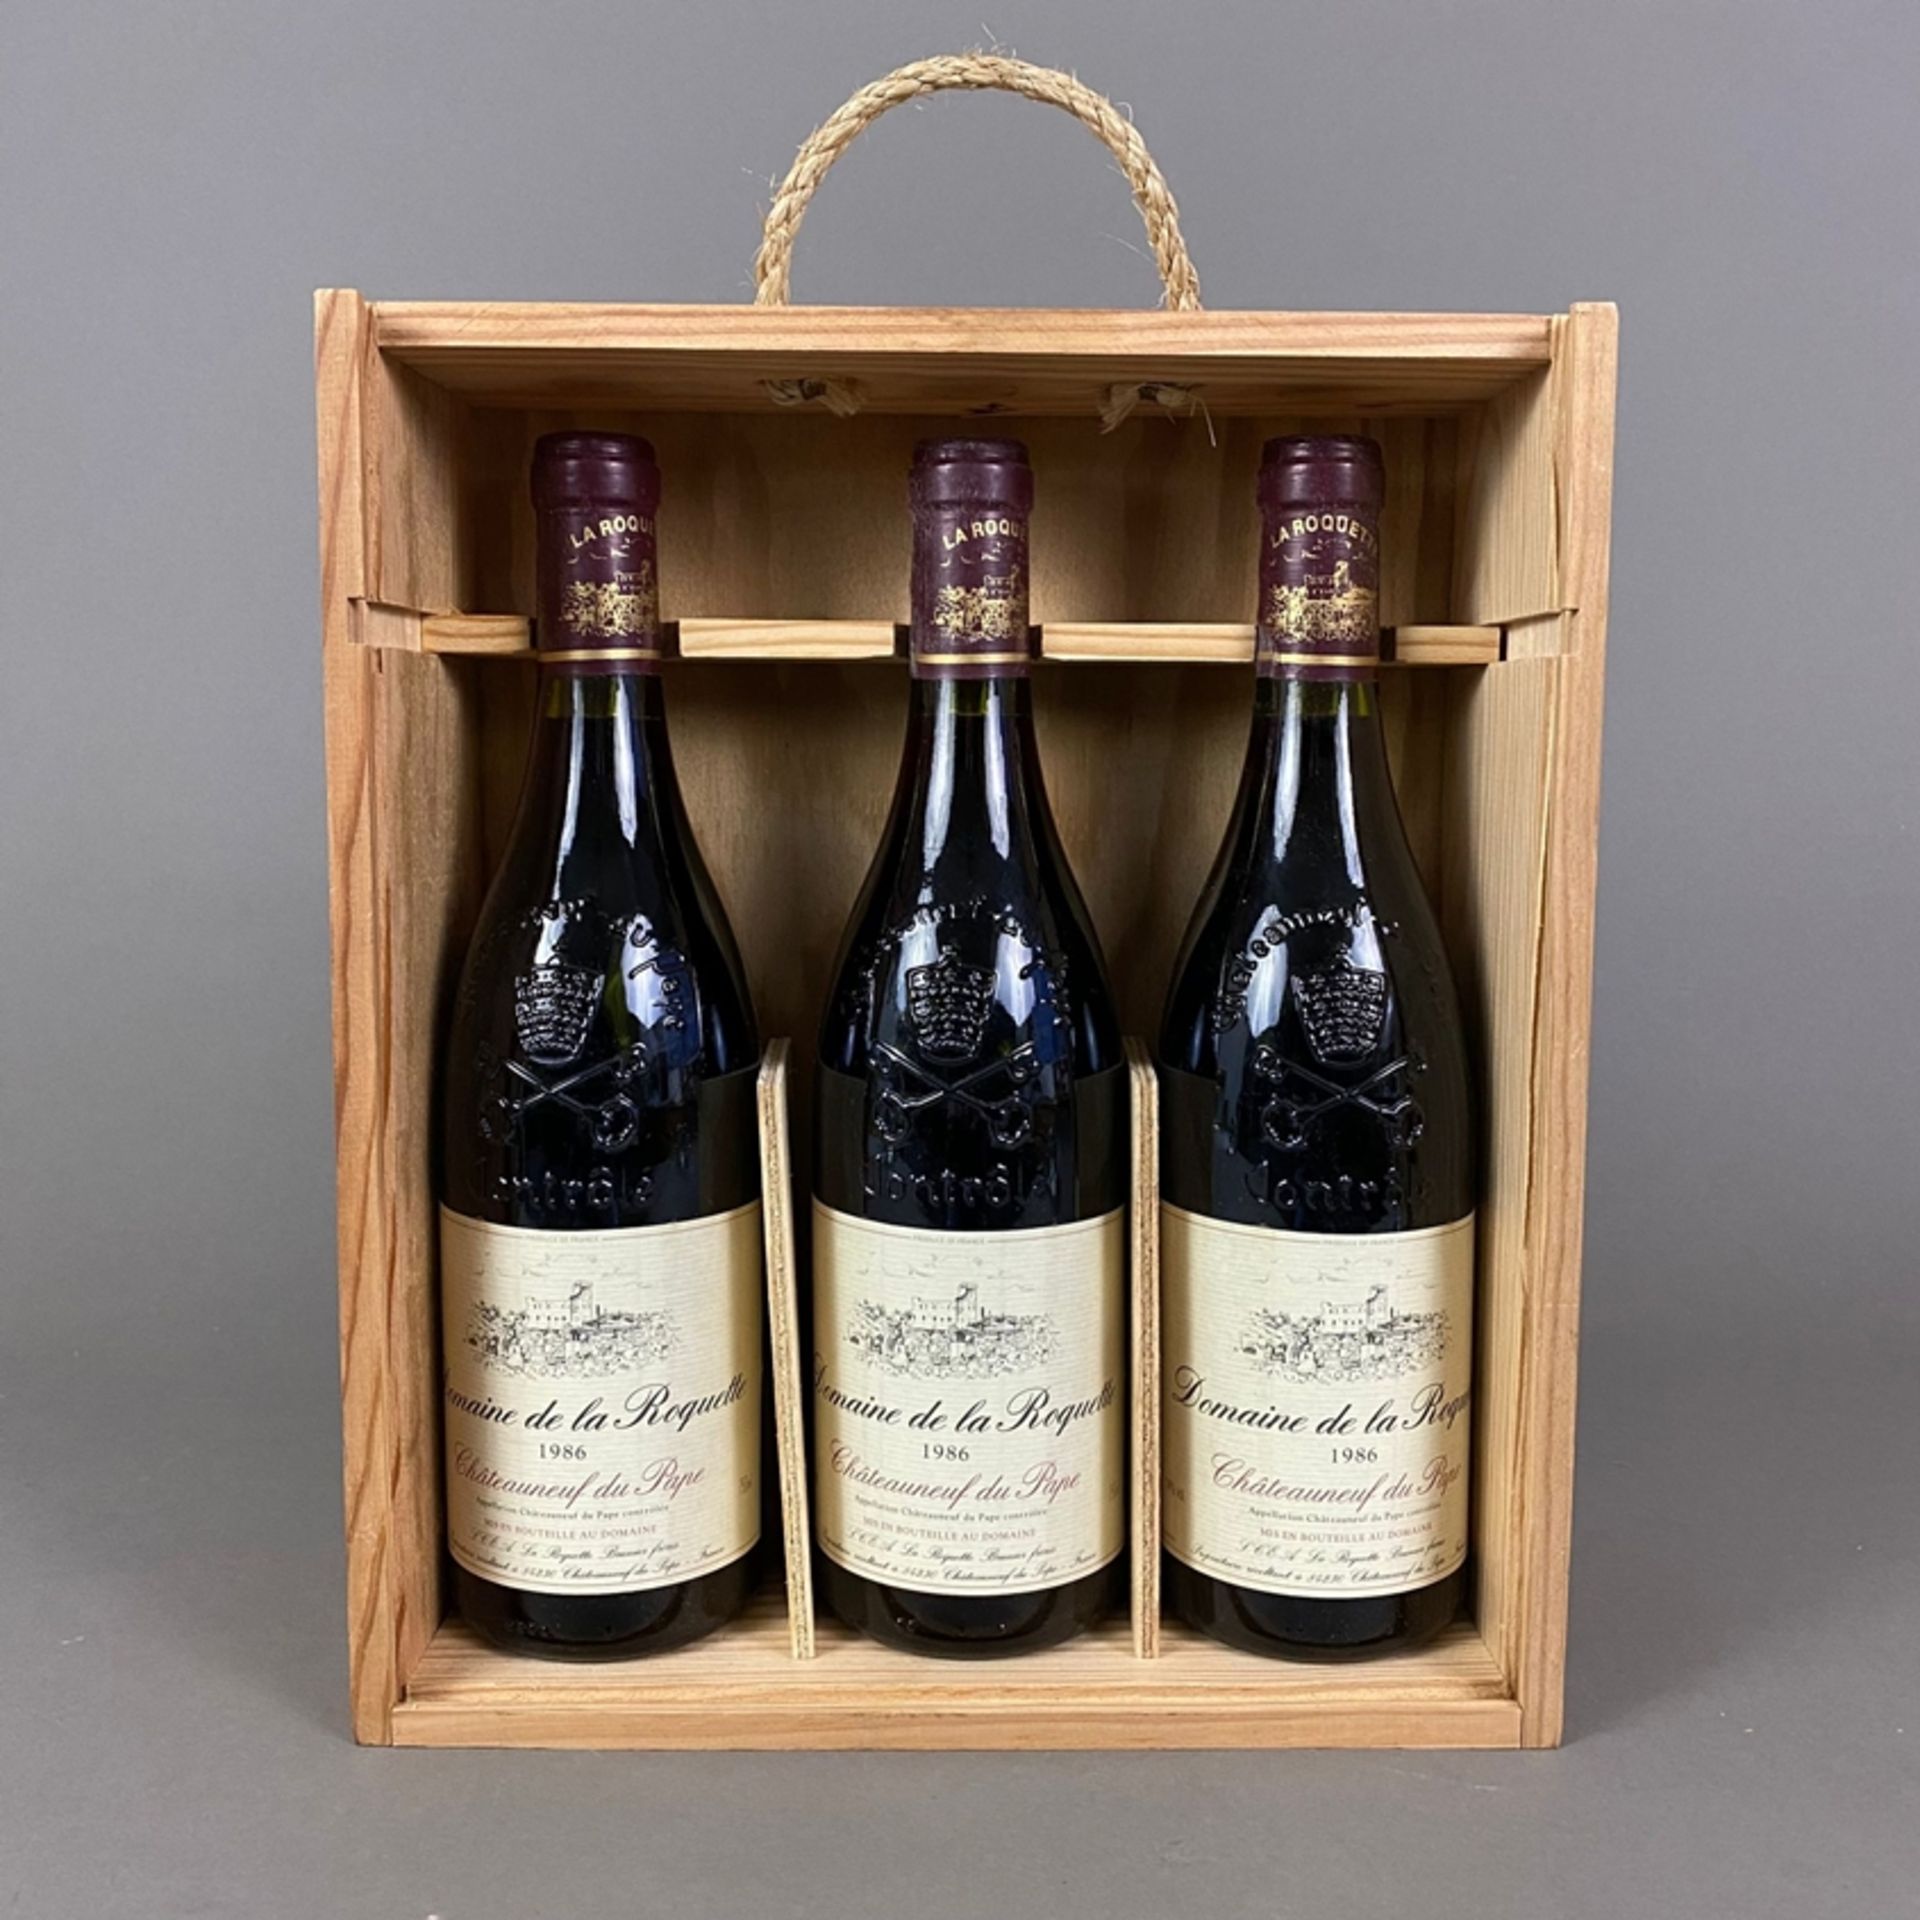 Weinkonvolut - 3 Flaschen 1986 Domaine de la Roquette, Châteauneuf-du-Pape, Rhône, France, 750 ml,